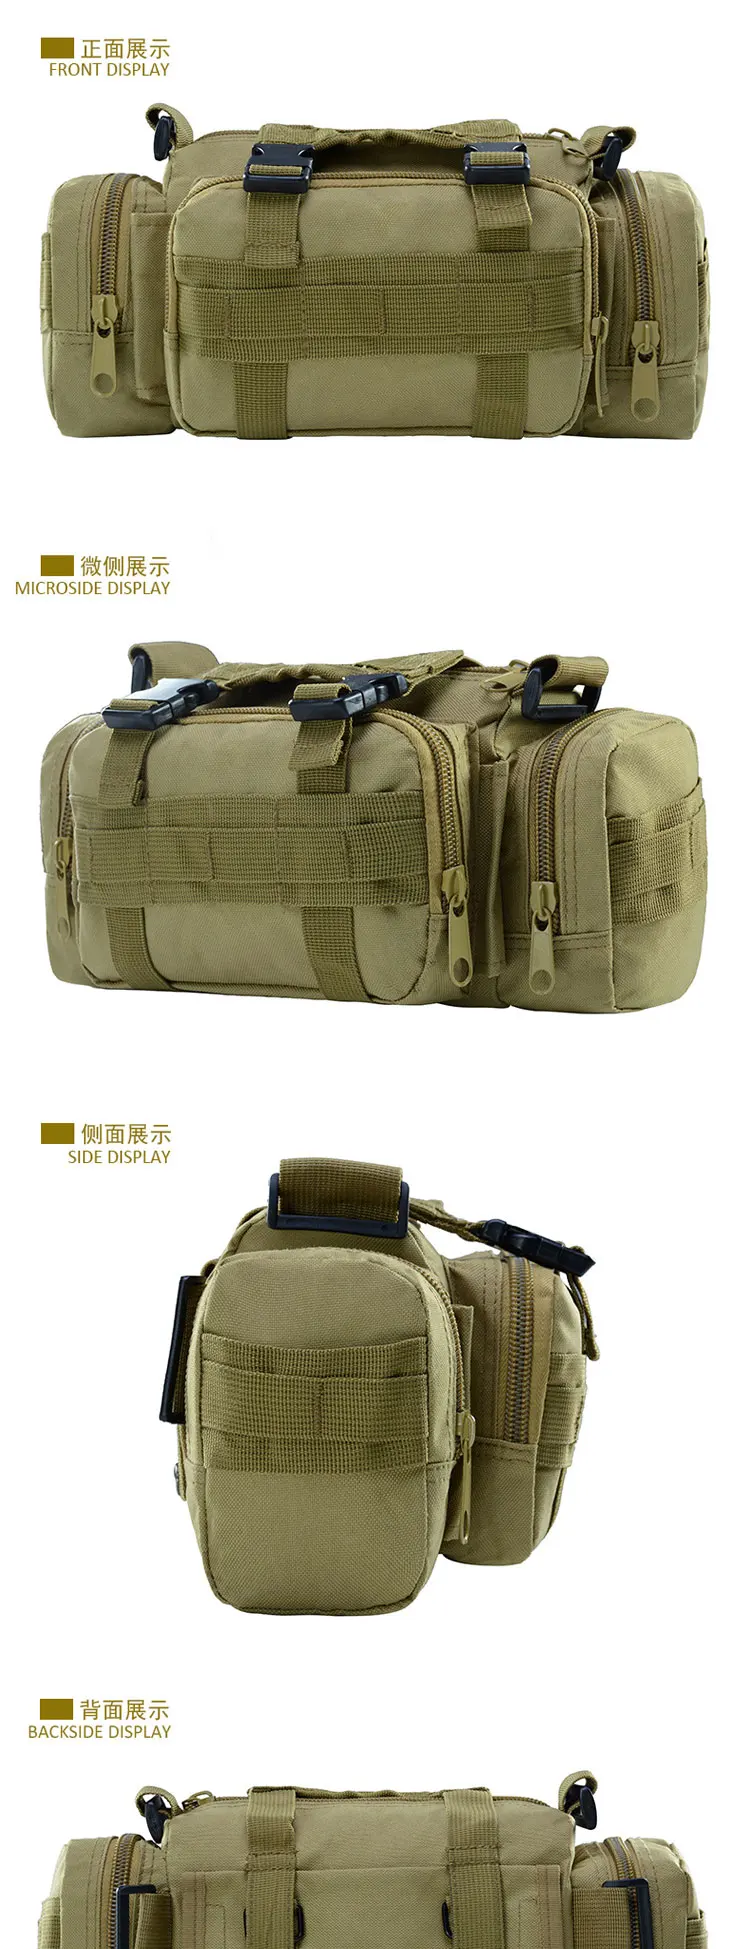 TIANHOO камуфляжная поясная сумка для камеры, тактическая сумка для занятий спортом на открытом воздухе, альпинизмом, бегом, поясная сумка